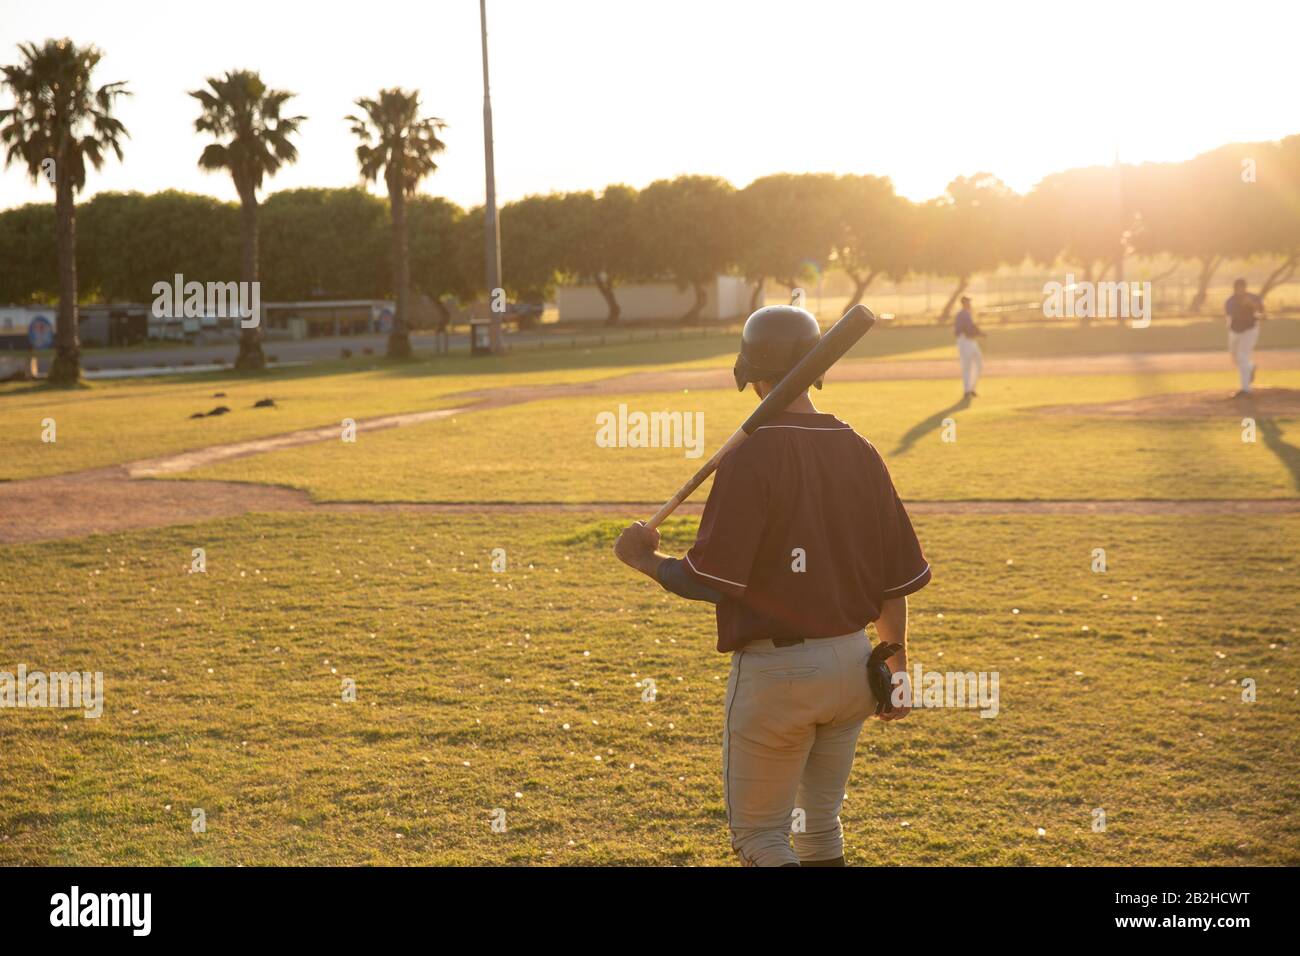 Joueur de baseball pendant le match Banque D'Images